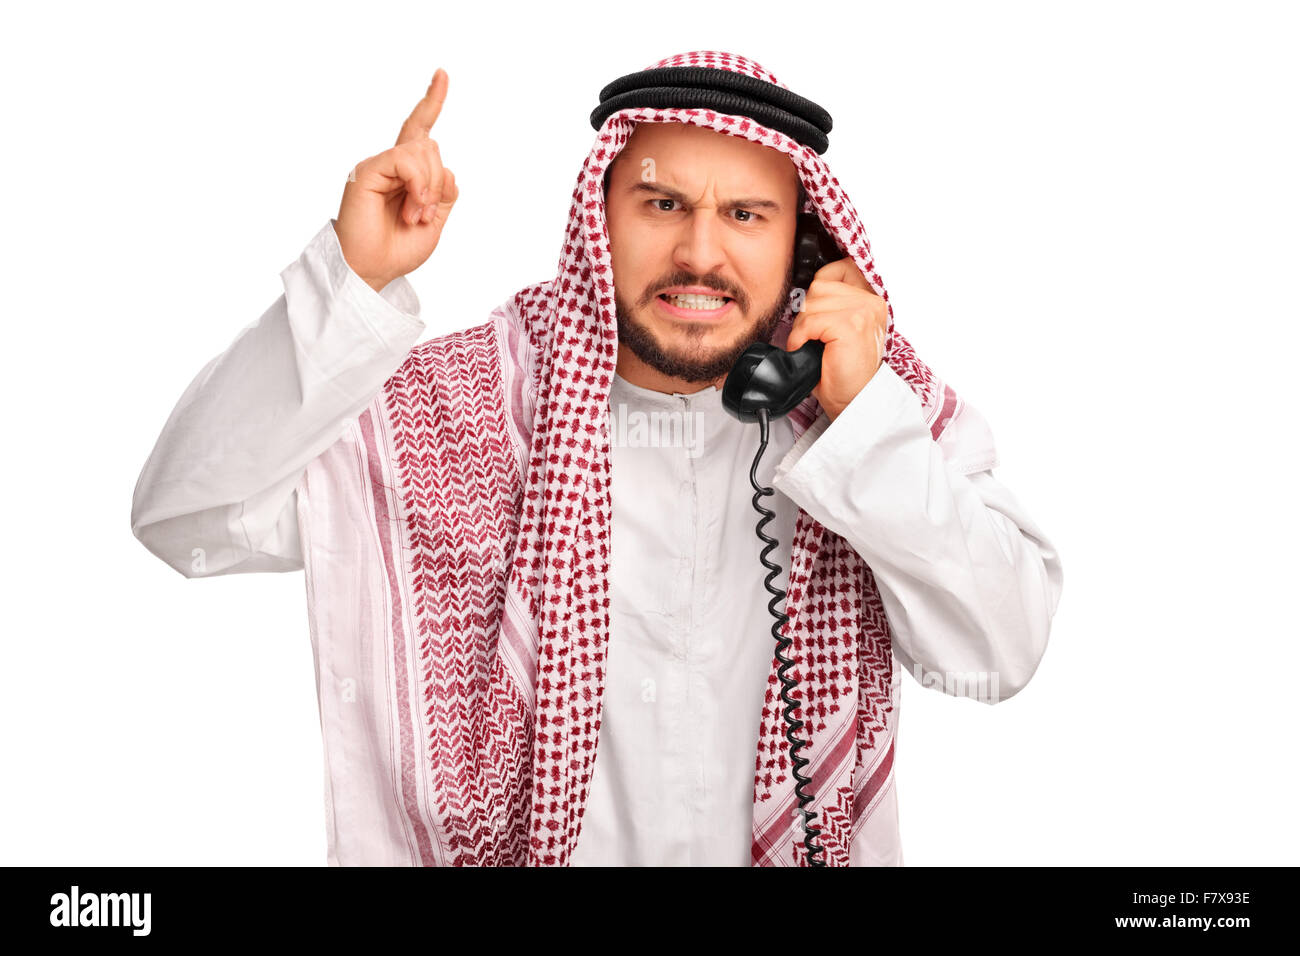 Телефон арабов. Смешной араб. Араб с телефоном. Счастливый араб.